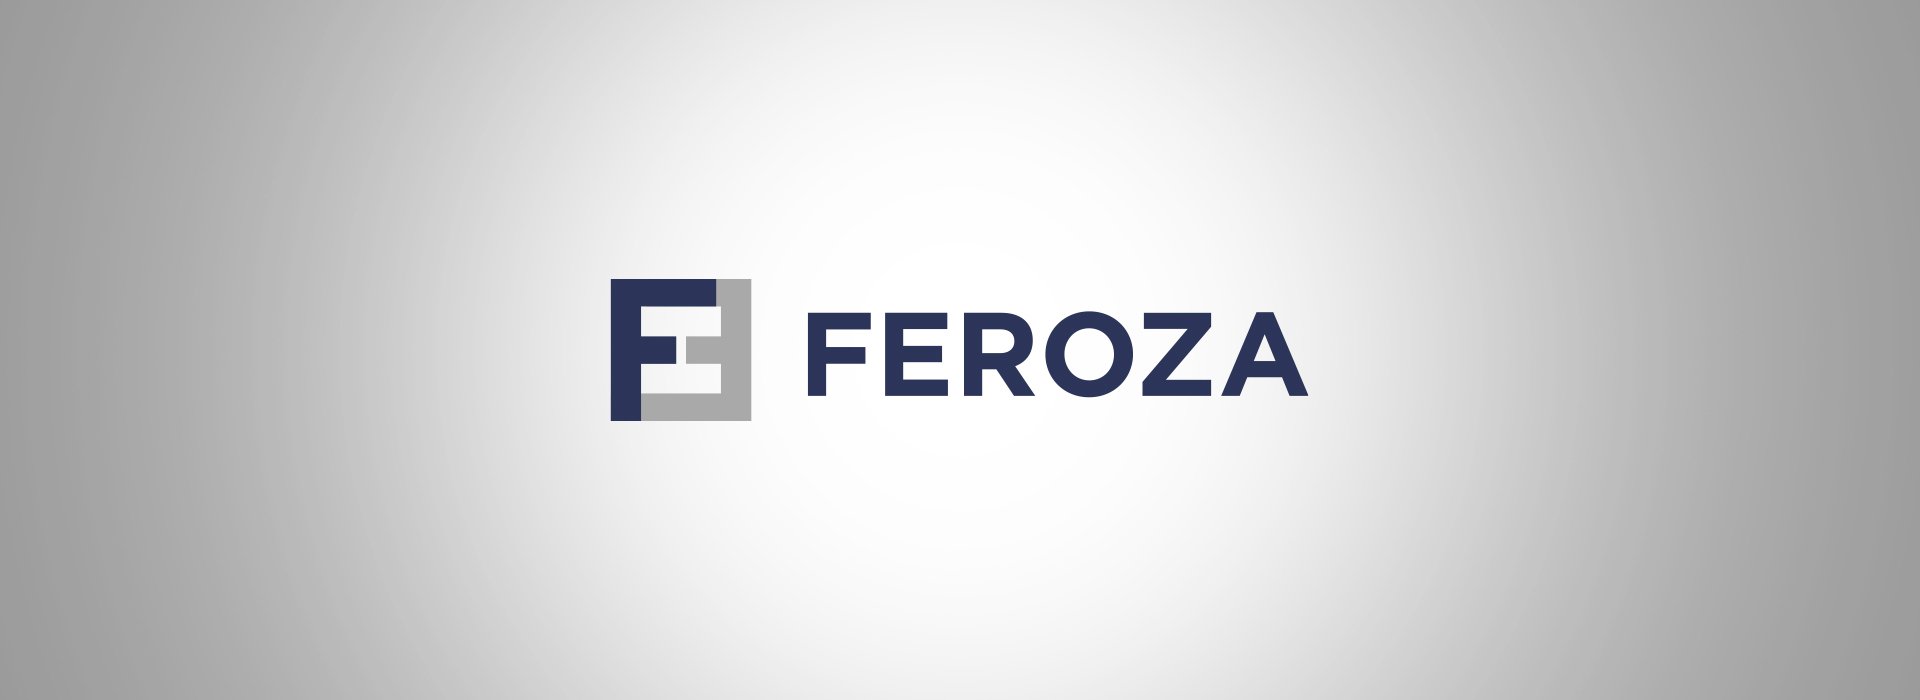 Návrh loga Feroza